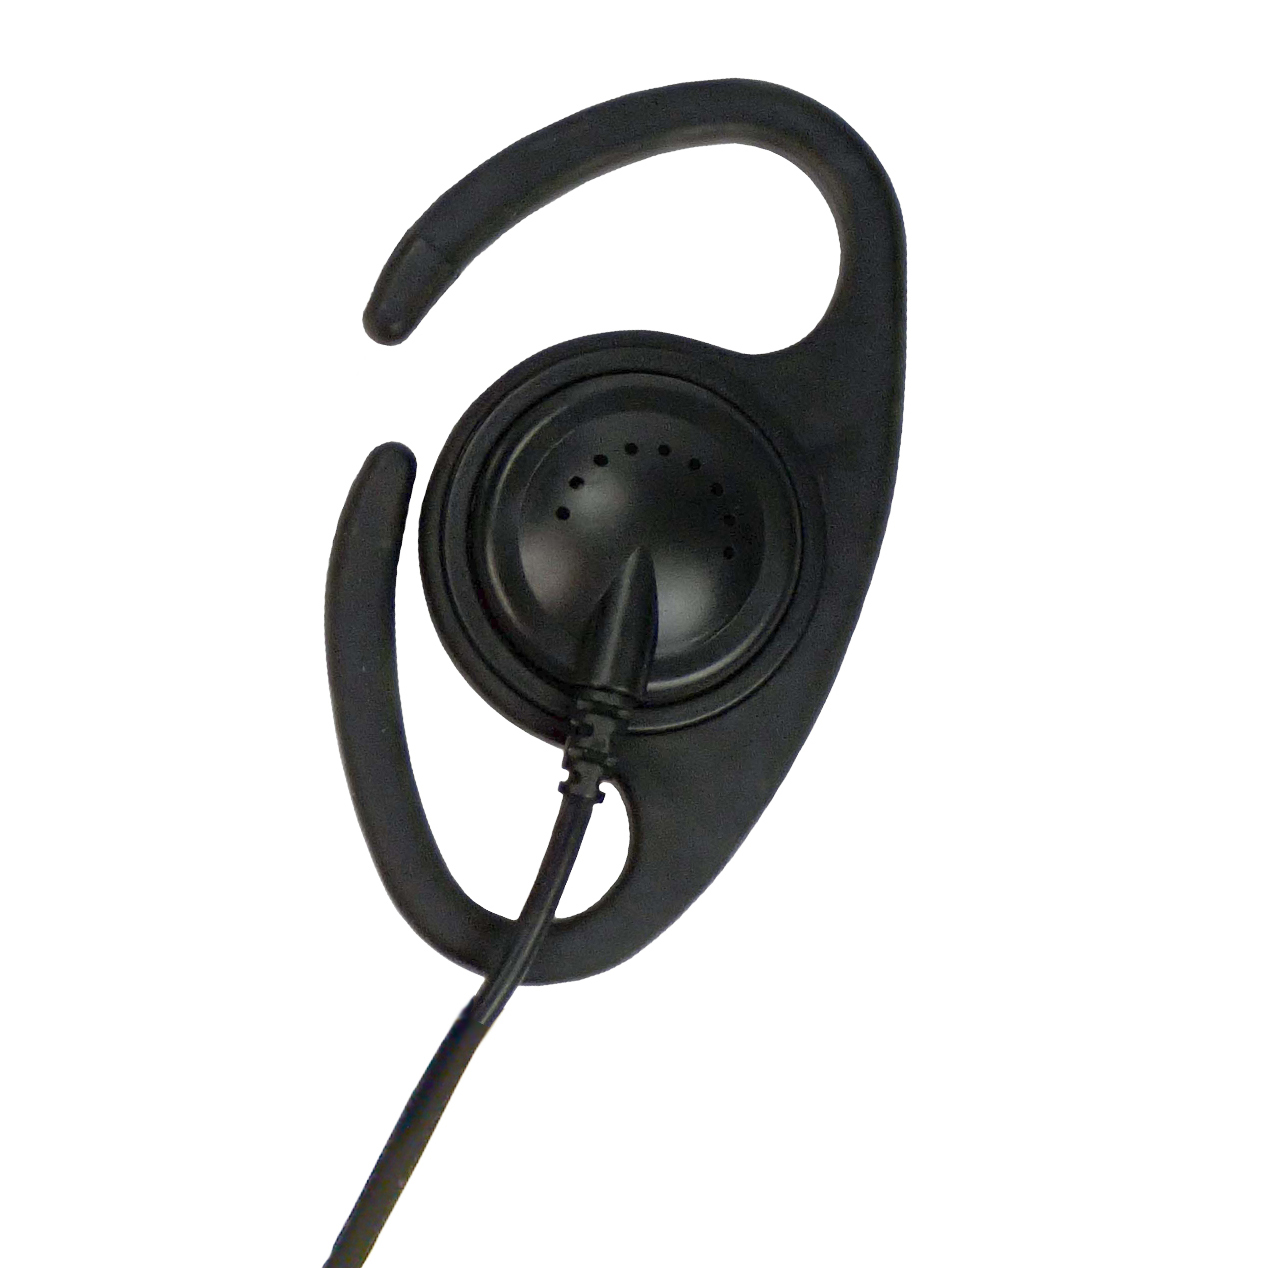 D-Shape earpiece